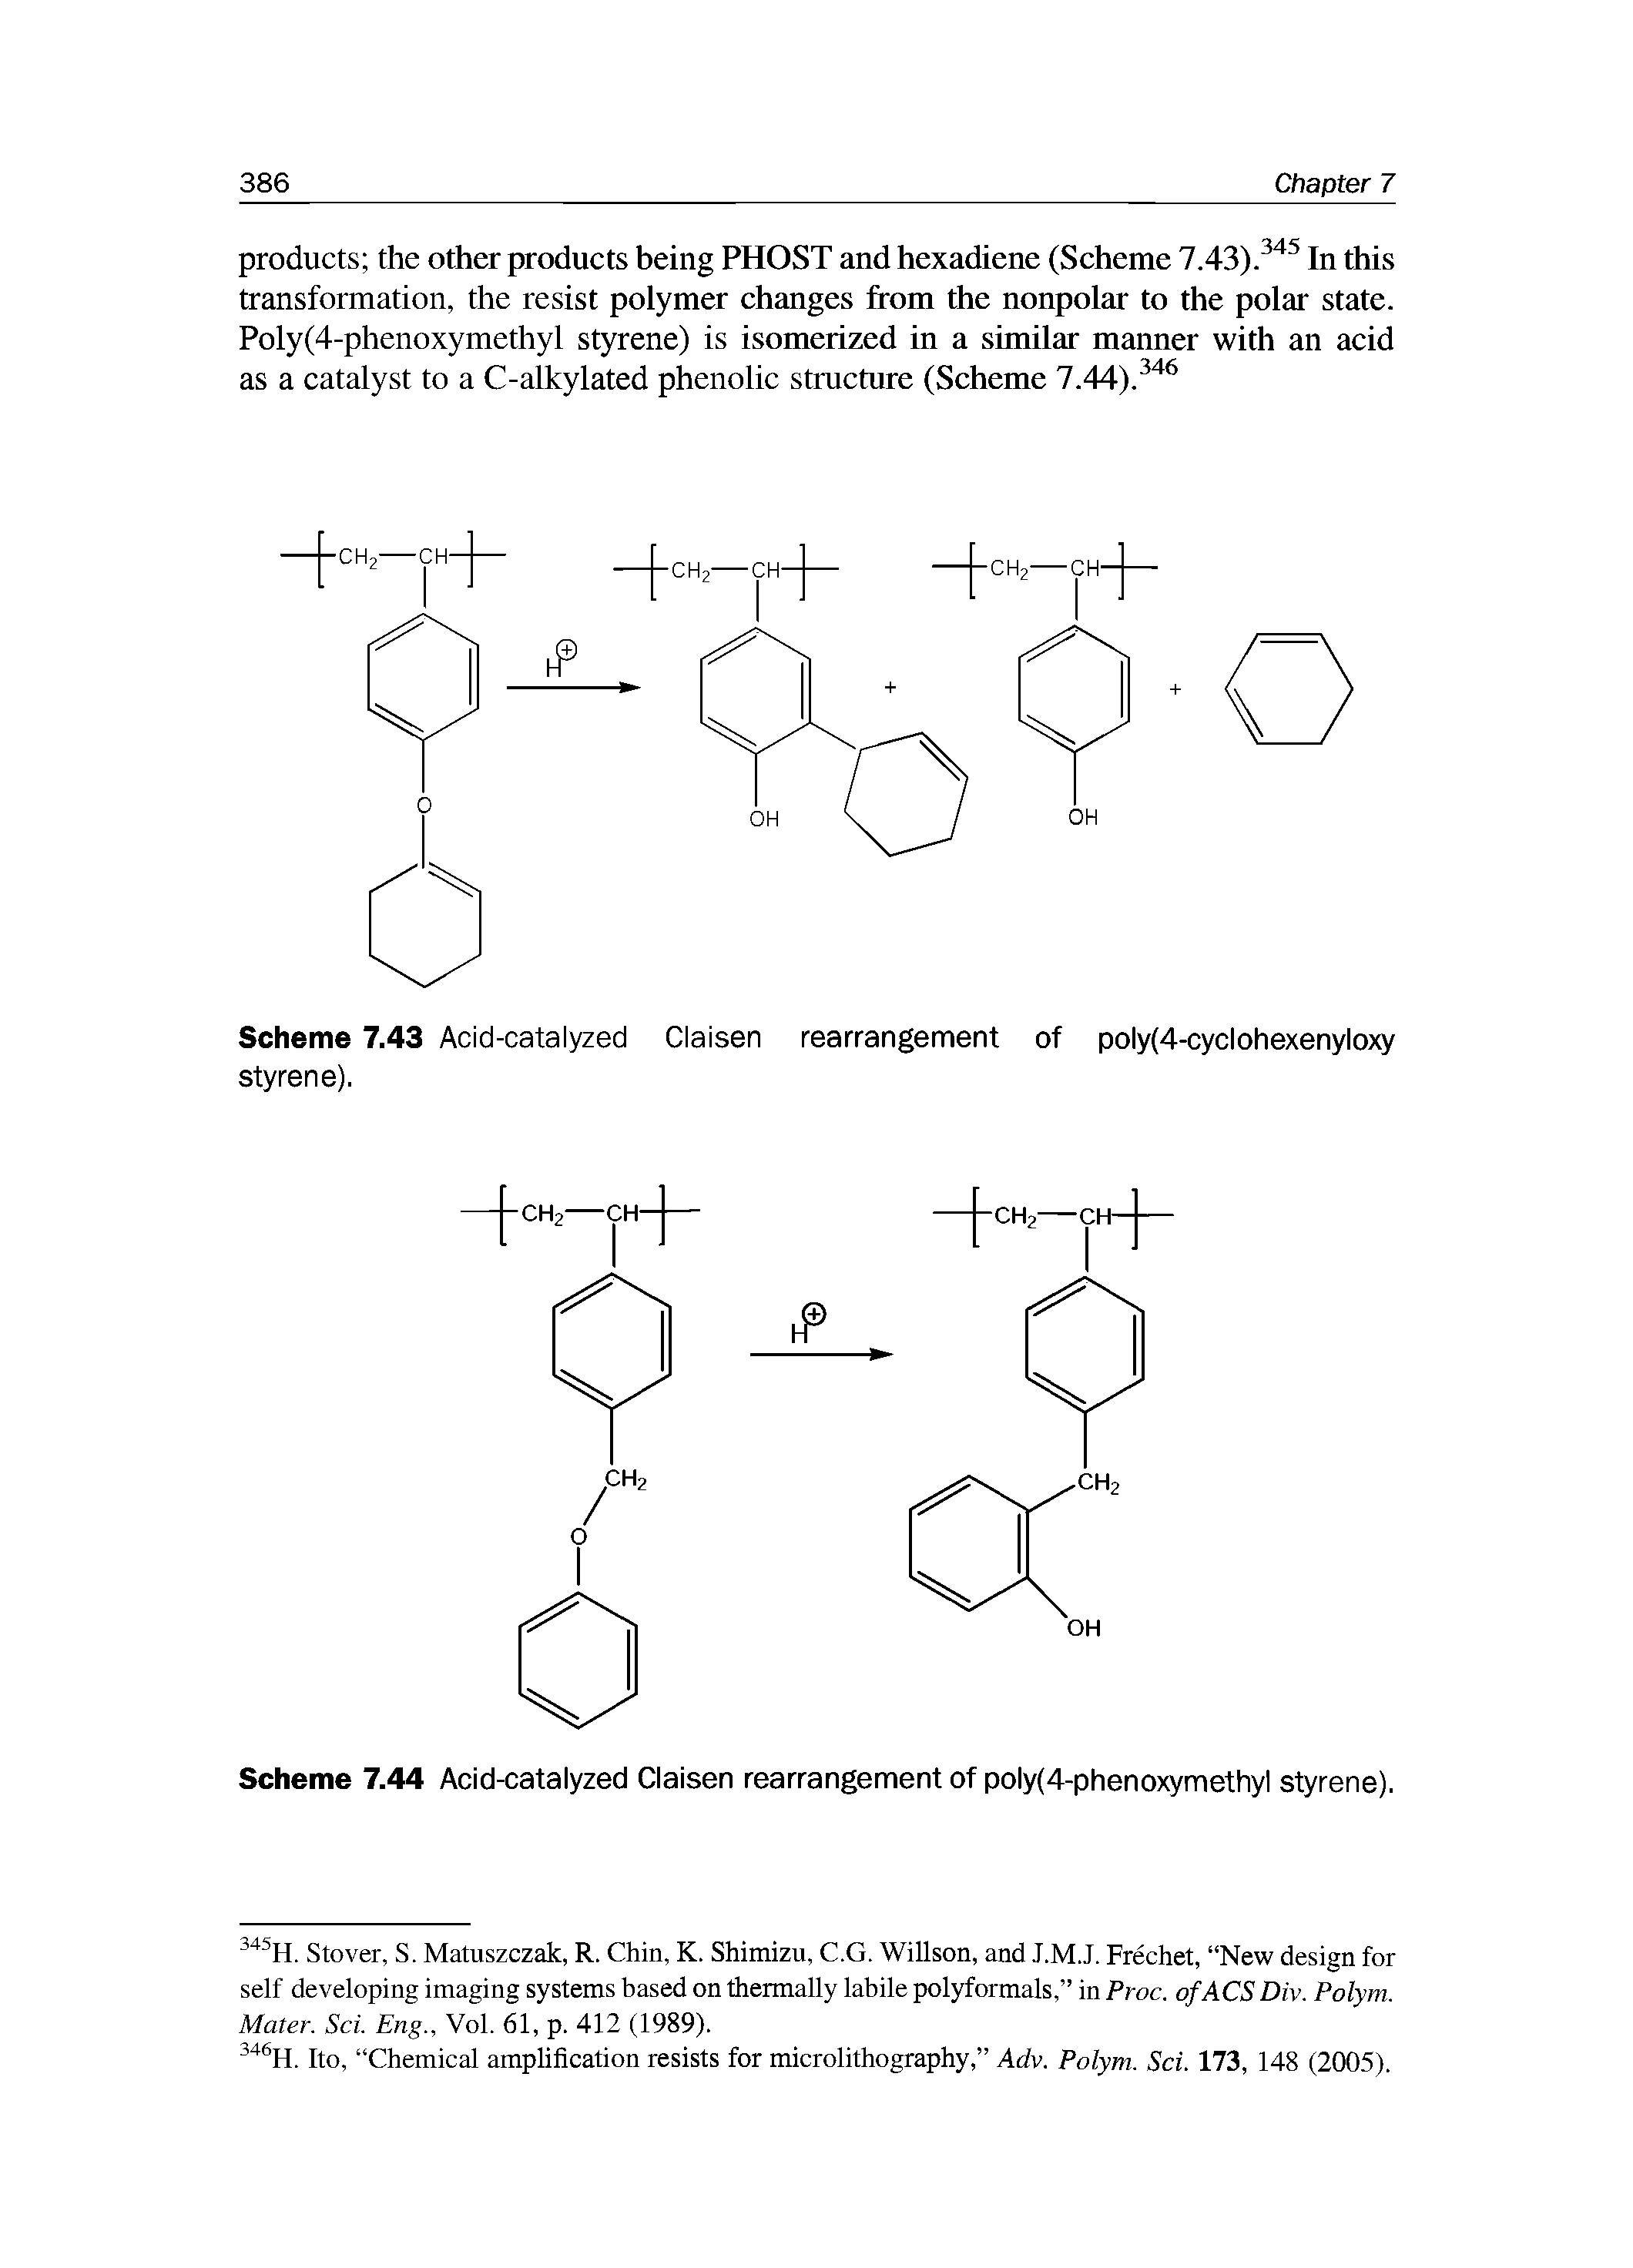 Scheme 7.43 Acid-catalyzed Claisen rearrangement of poly(4-cyclohexenyloxy styrene).